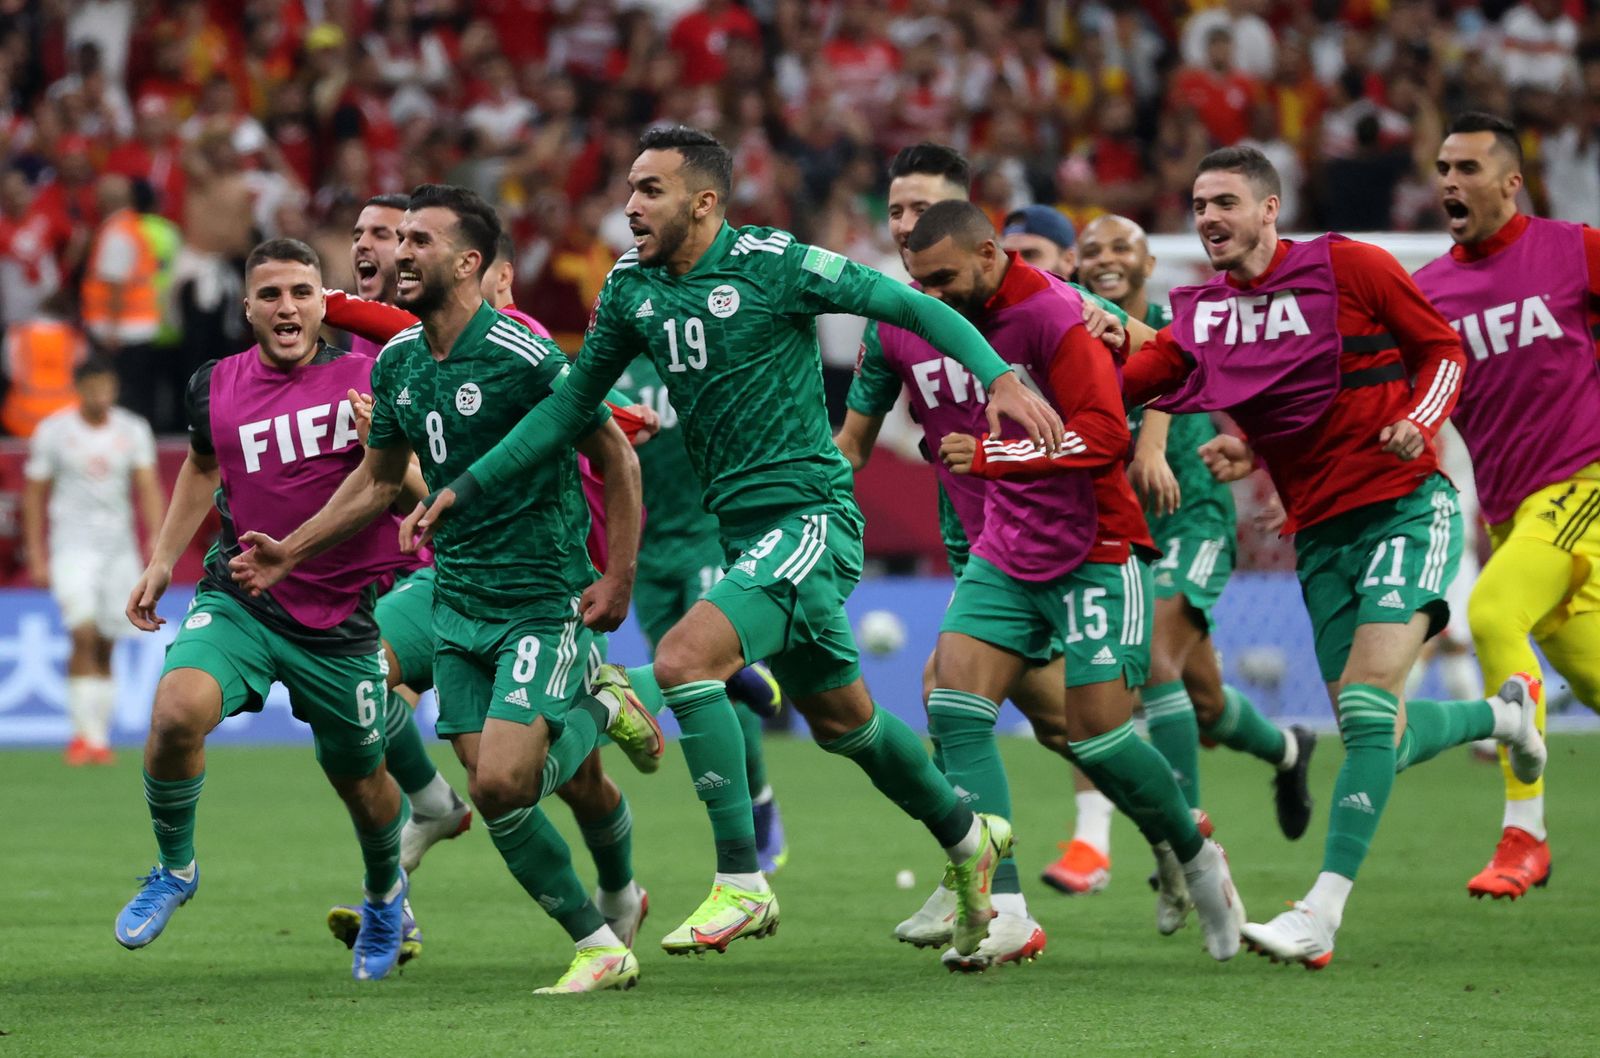 فرحة لاعبي المنتخب الجزائري بعد تسجيل هدف الفوز على تونس في نهائي كأس العرب 2021 - REUTERS